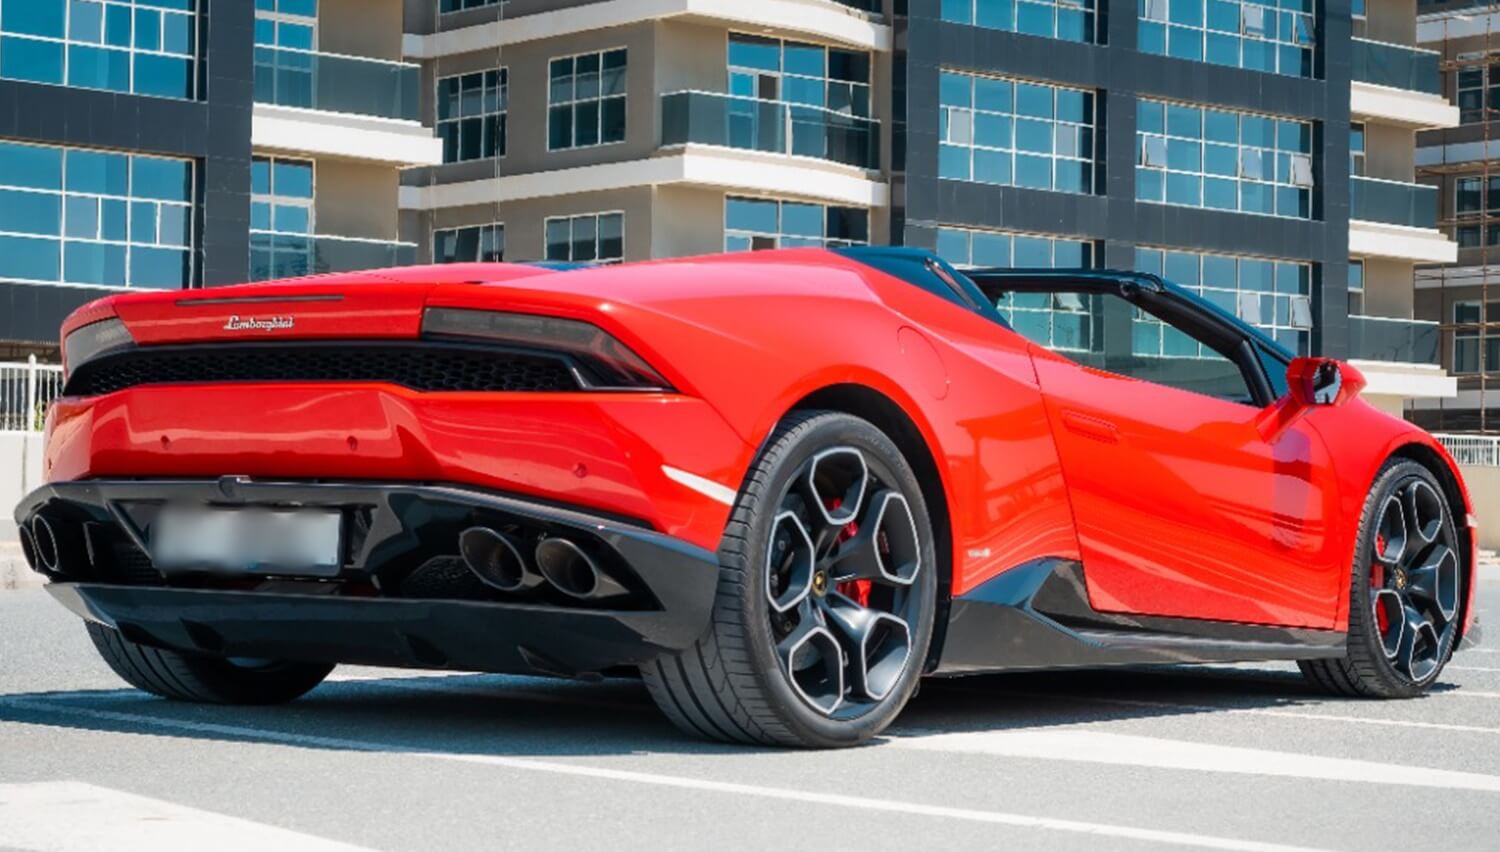 Lamborghini Huracan Spyder Rental Dubai